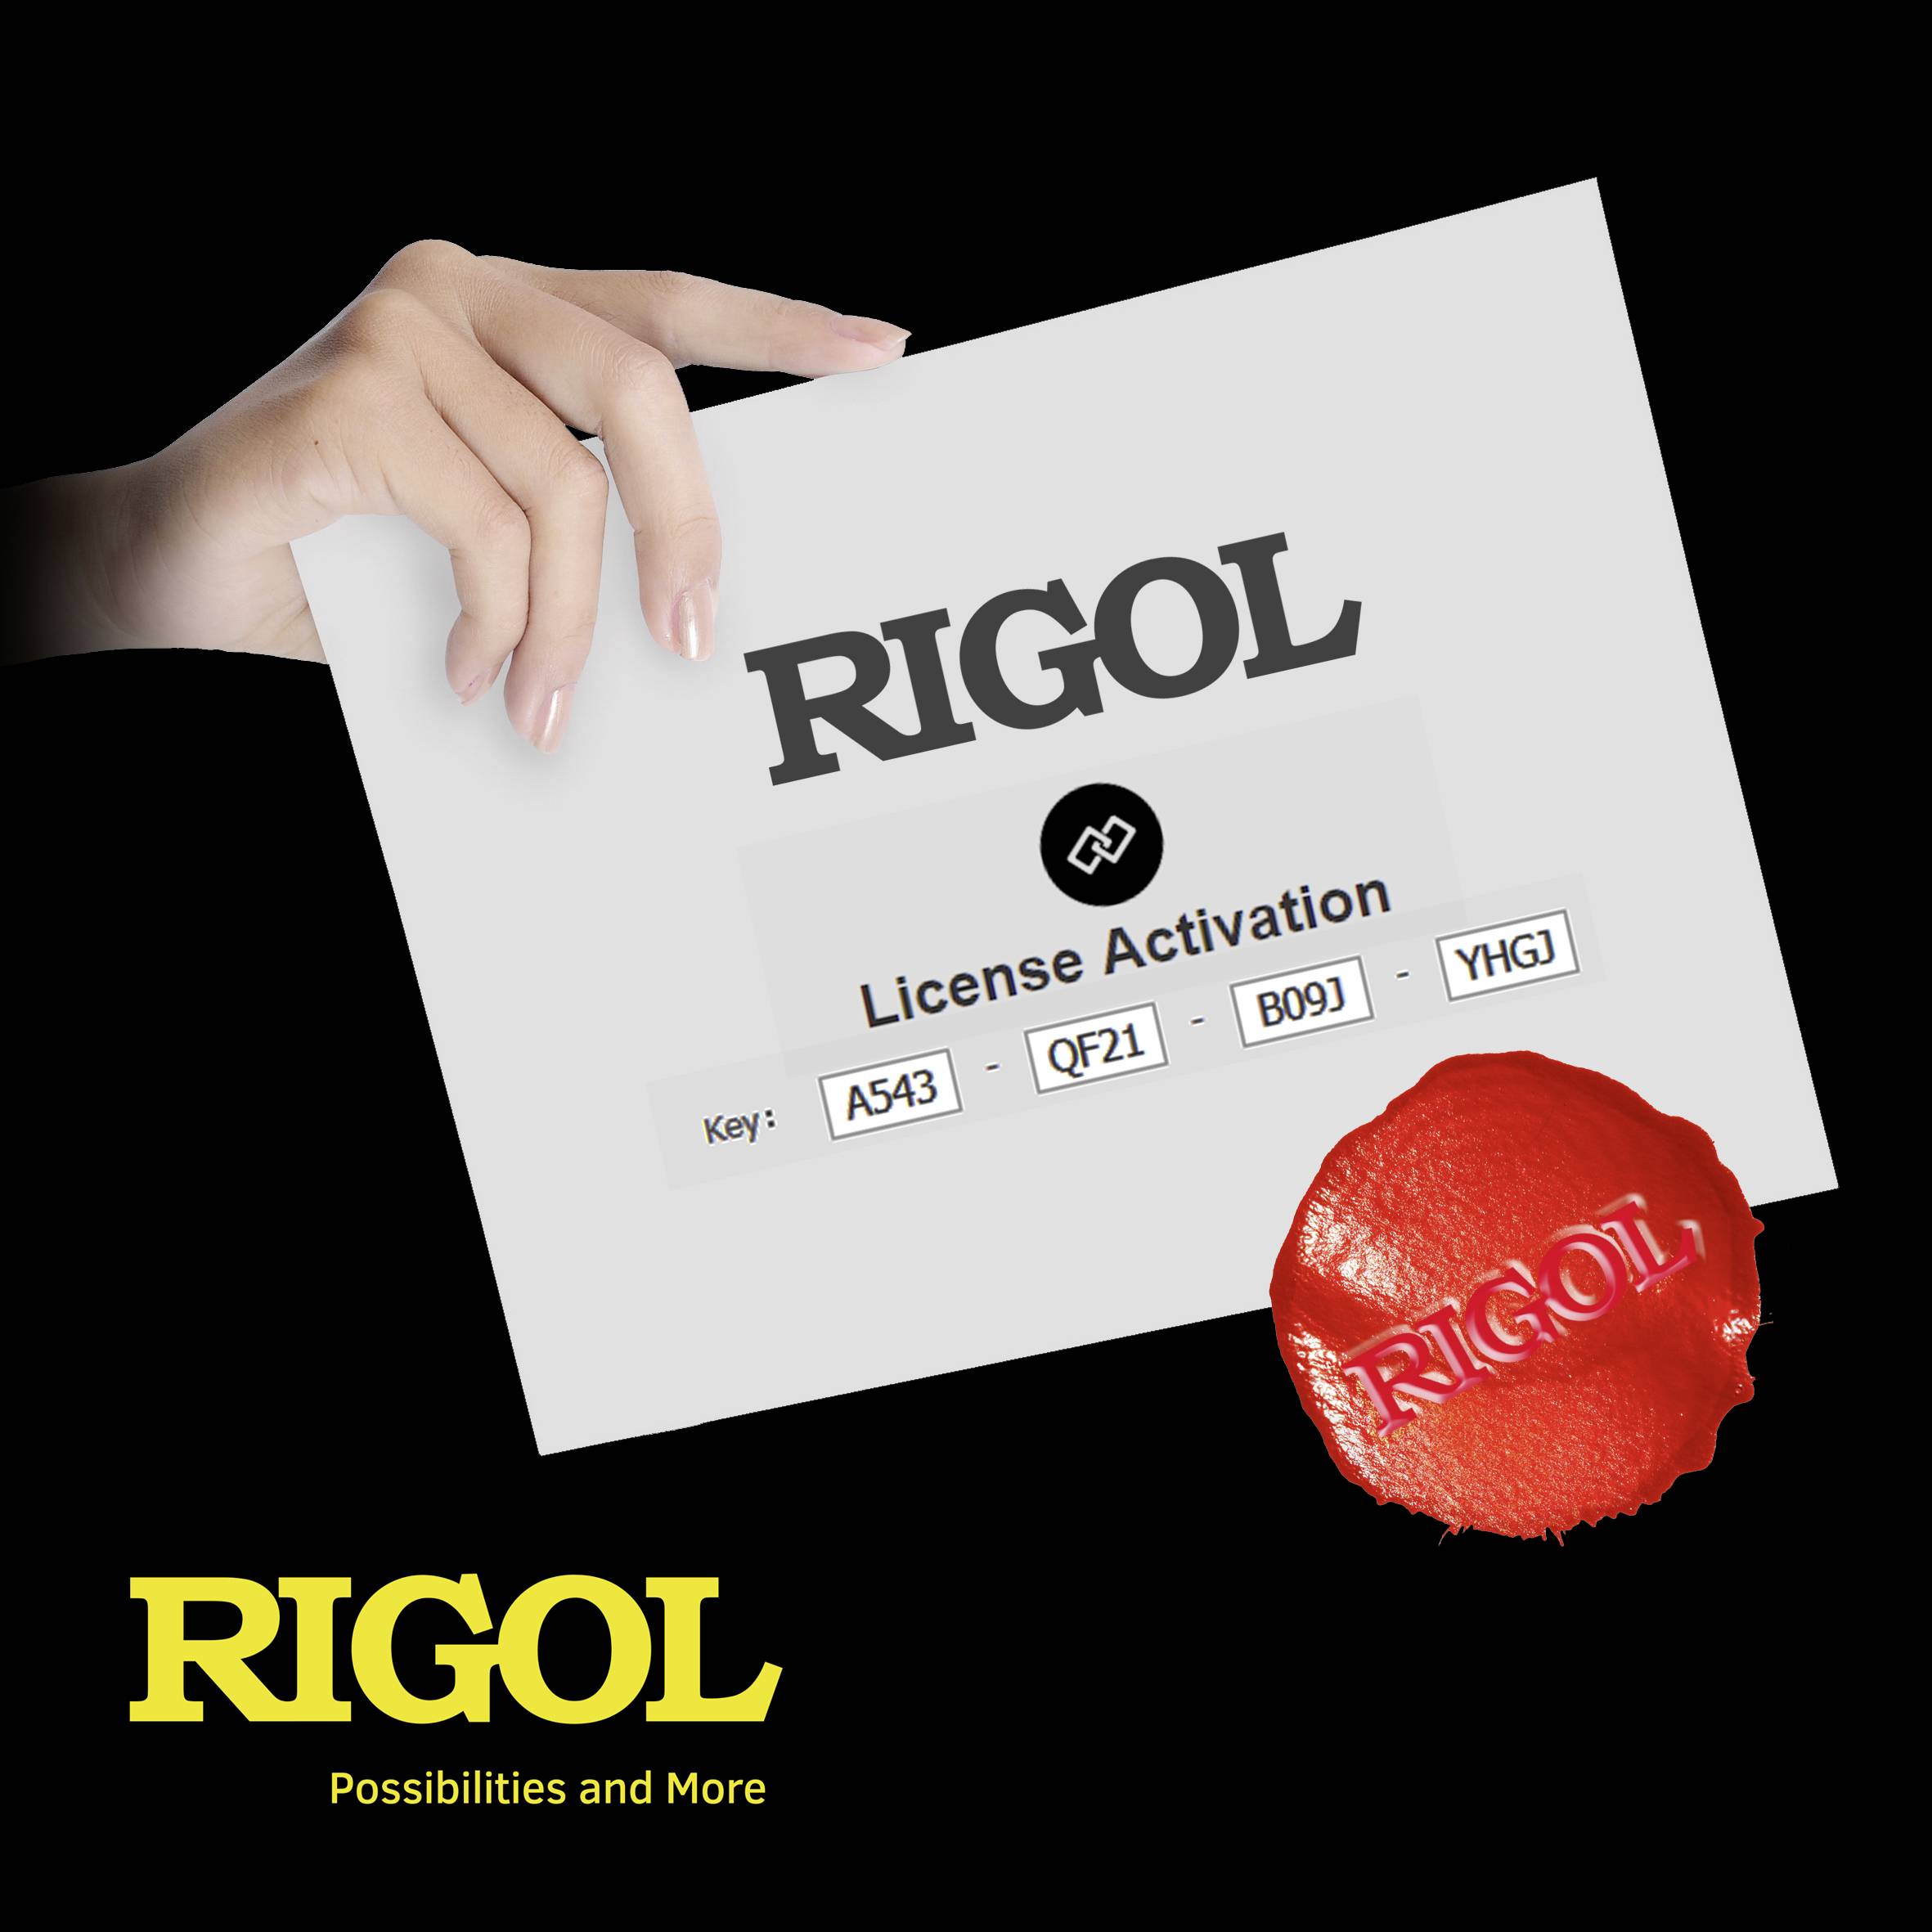 Rigol HI-RES-DP700 Software Compatible with Rigol